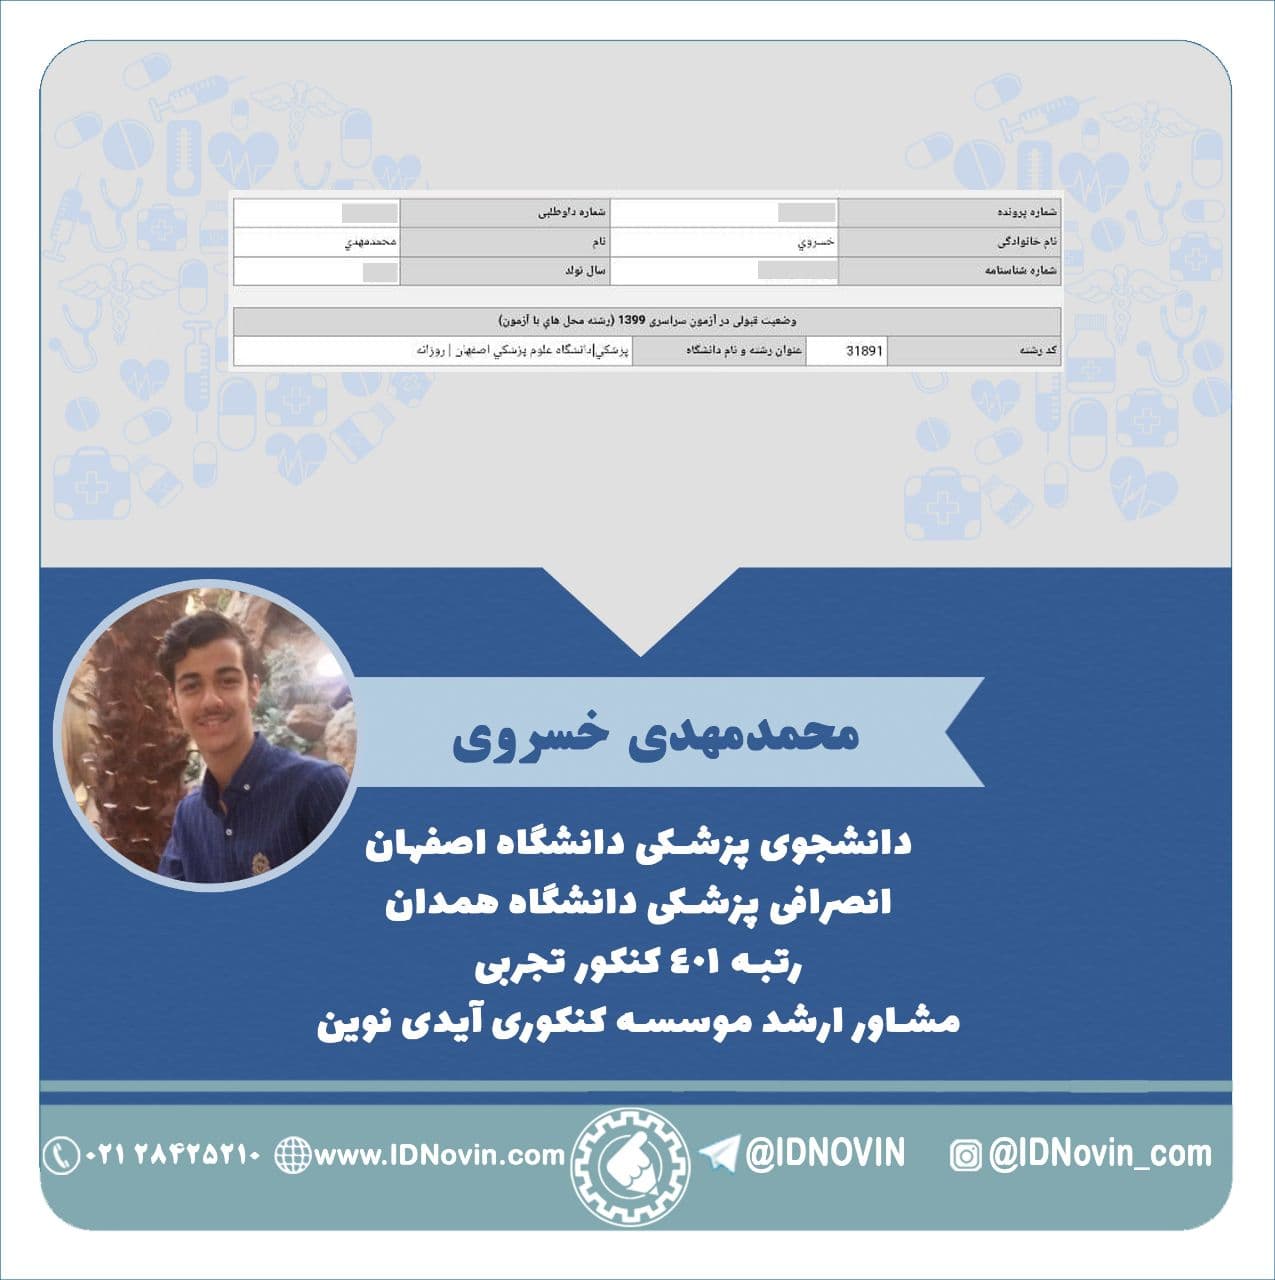 محمدمهدی خسروی دانشجوی پزشکی دانشگاه اصفهان